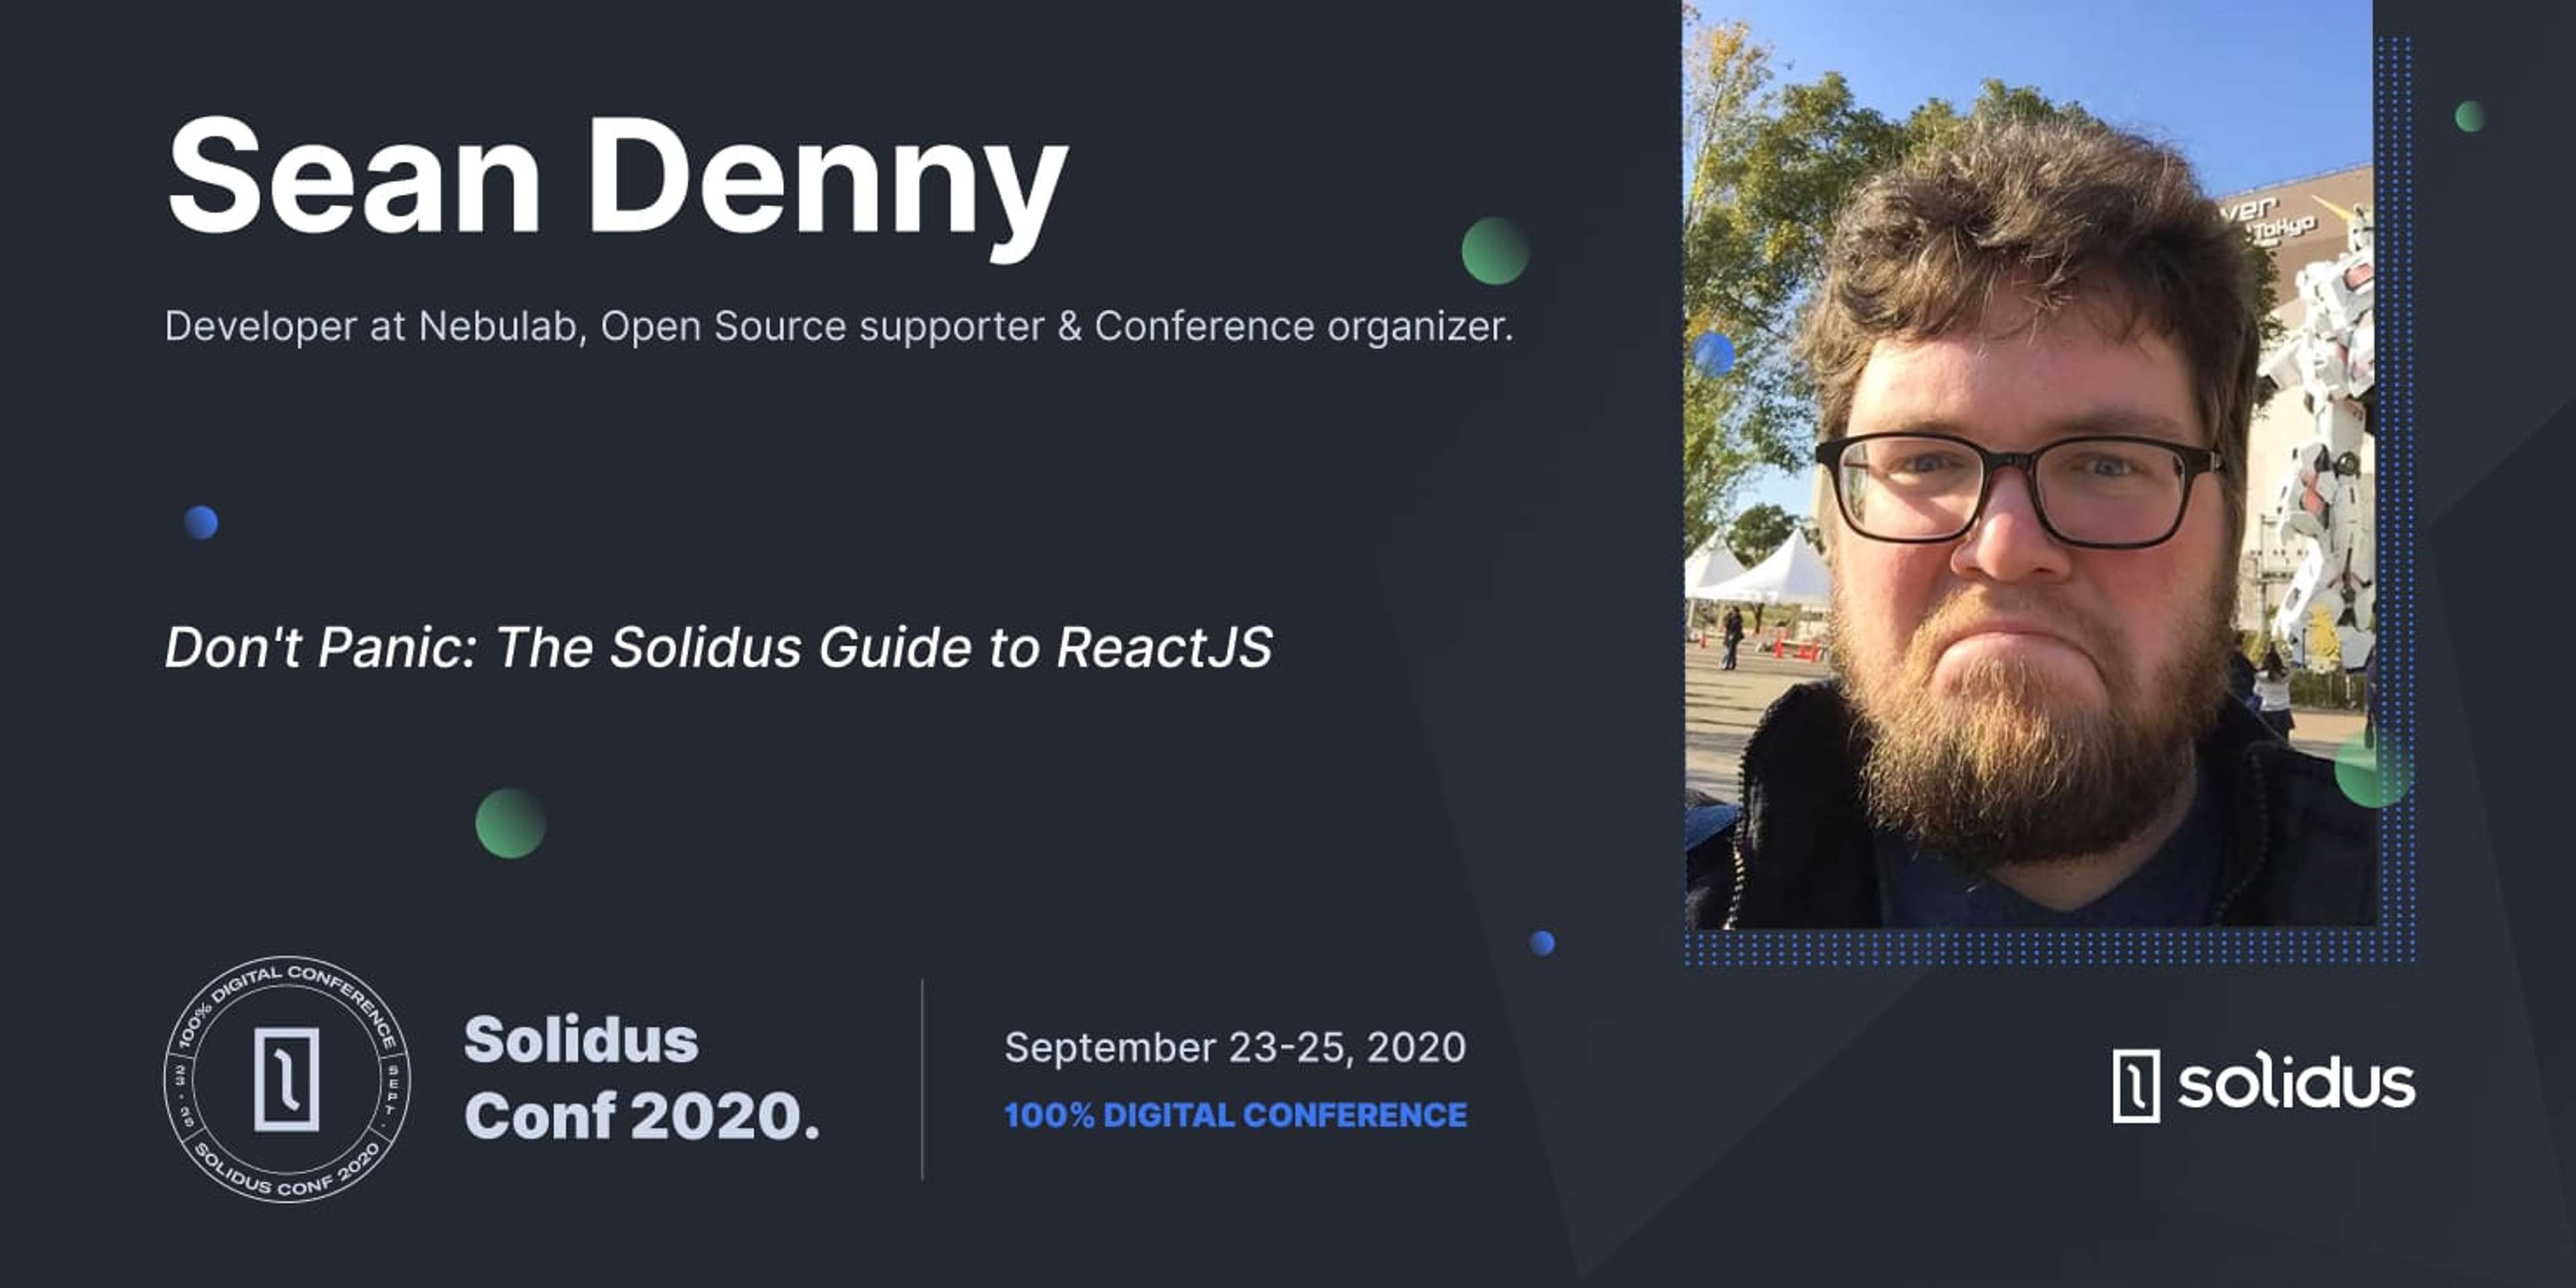 Cover image of SolidusConf 2020 Presenter Sean Denny post